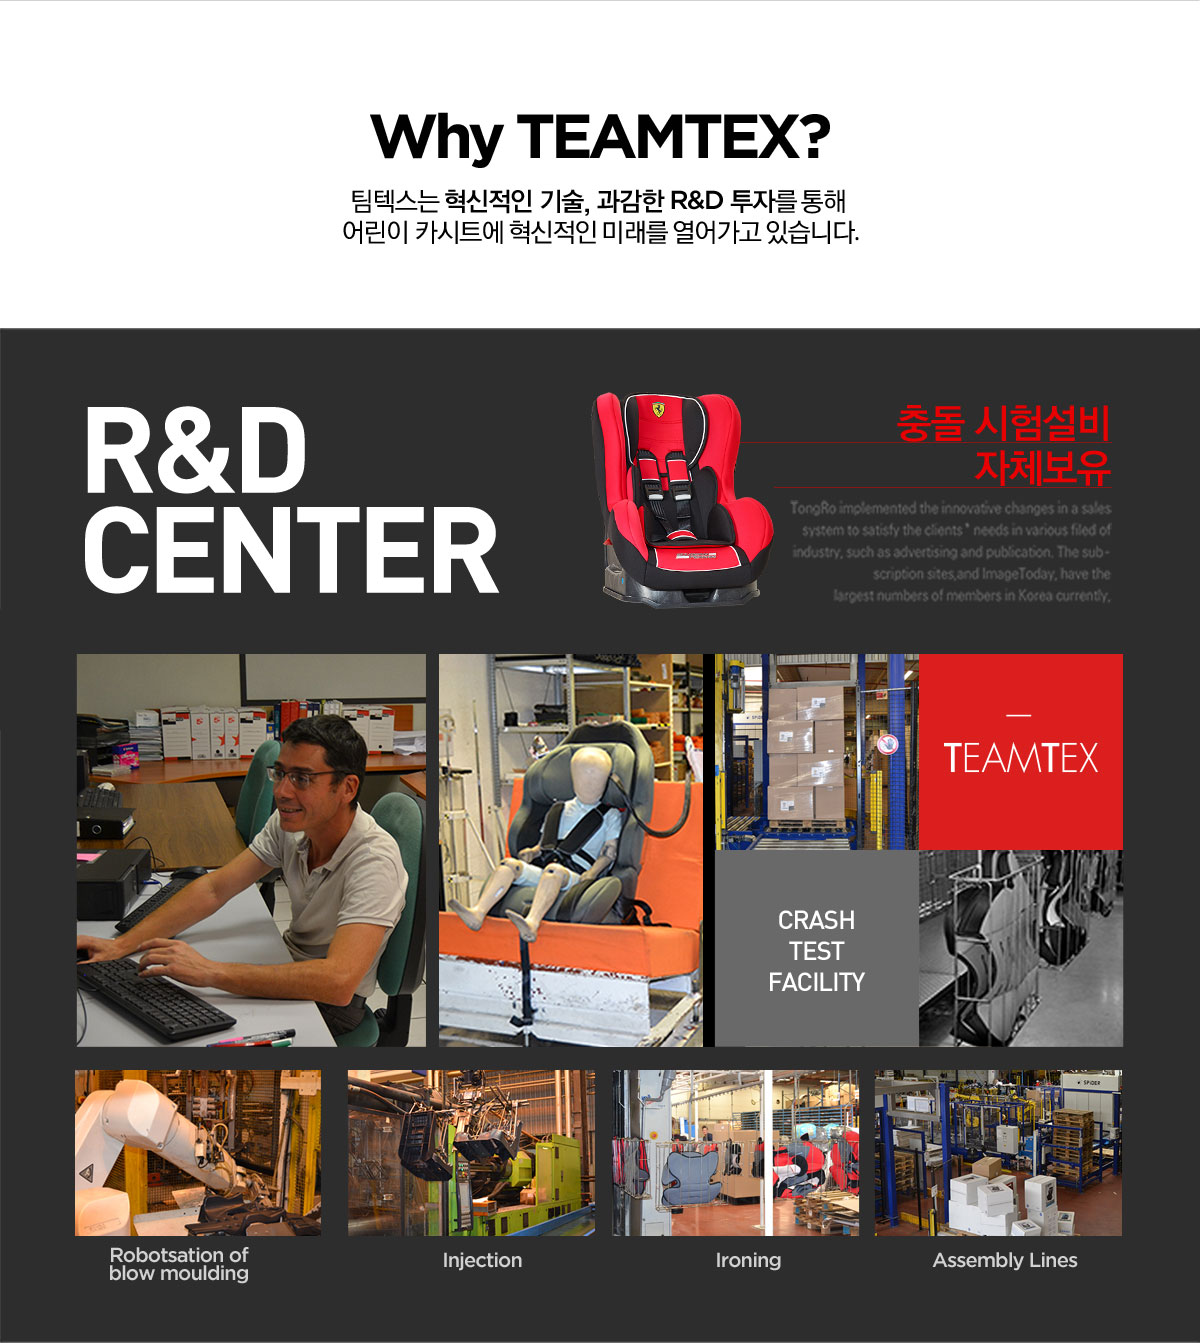 Why Teamtex? 팀텍스는 혁신적인 기술, 과감한 R&D 투자를 통해 어린이 카시트에 혁신적인 미래를 열어가고 있습니다.